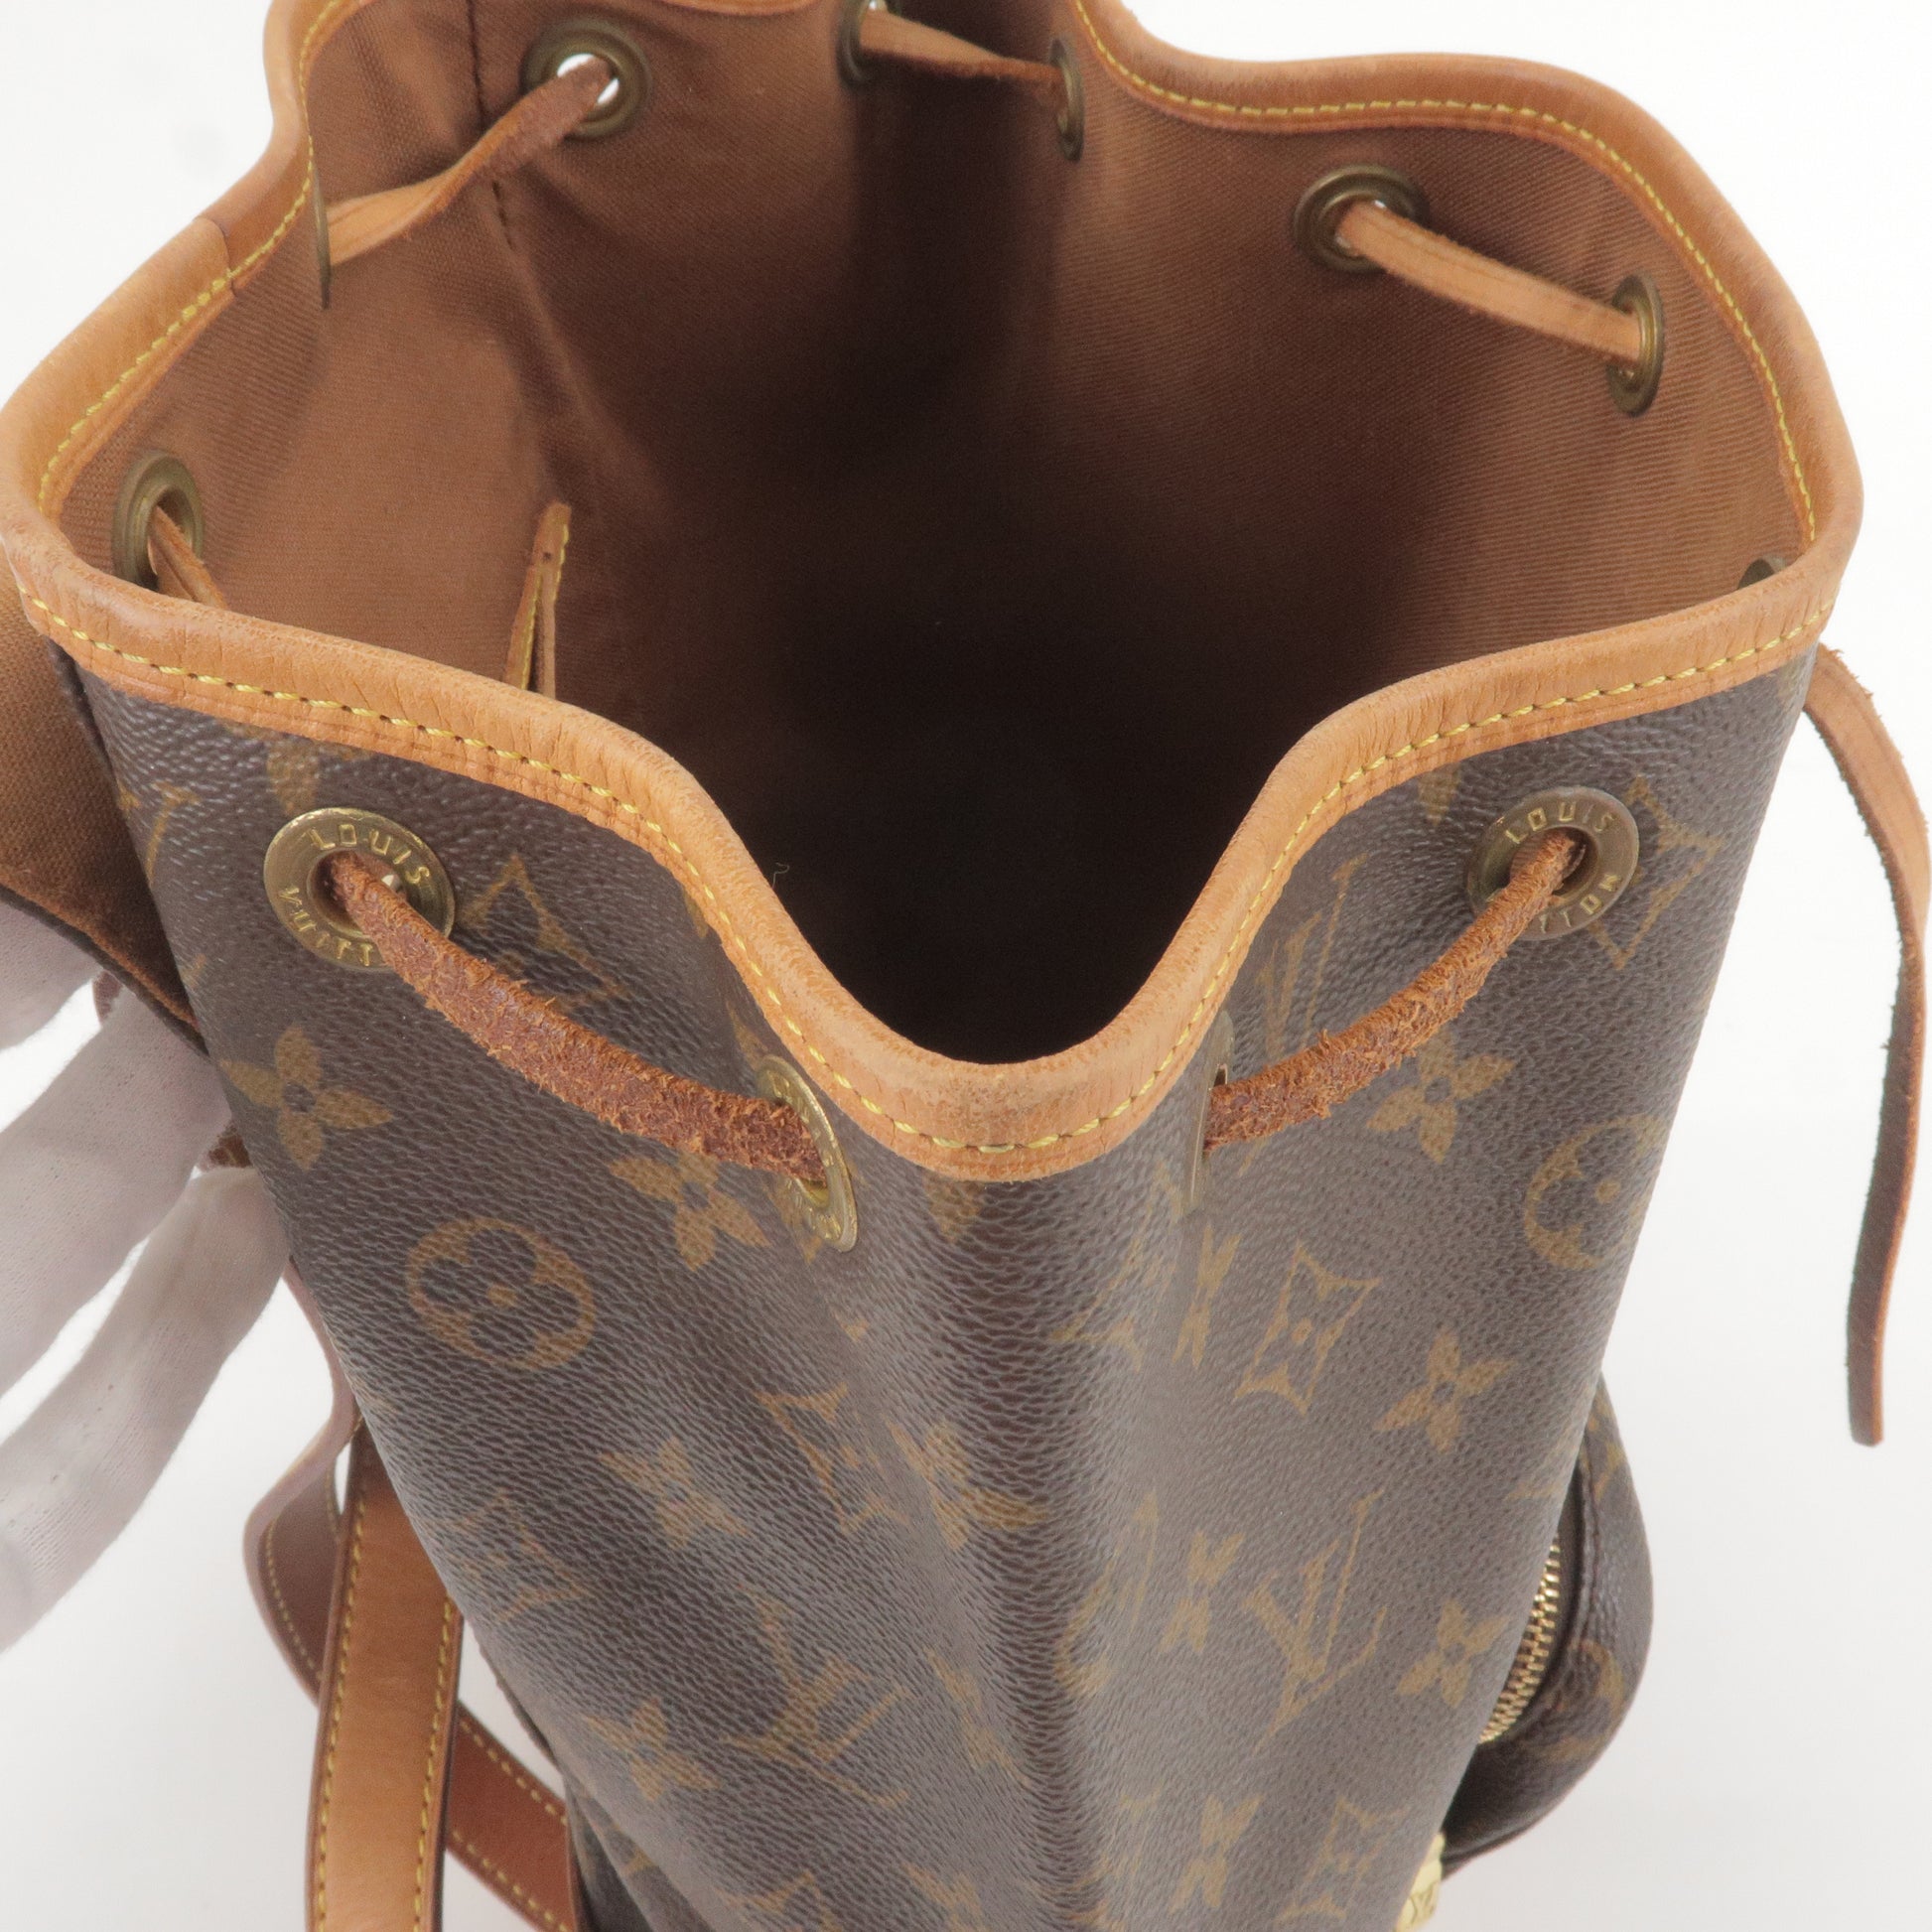 Authentic Louis Vuitton Mahina GM Monogram Empreinte Leather Shoulder Bag